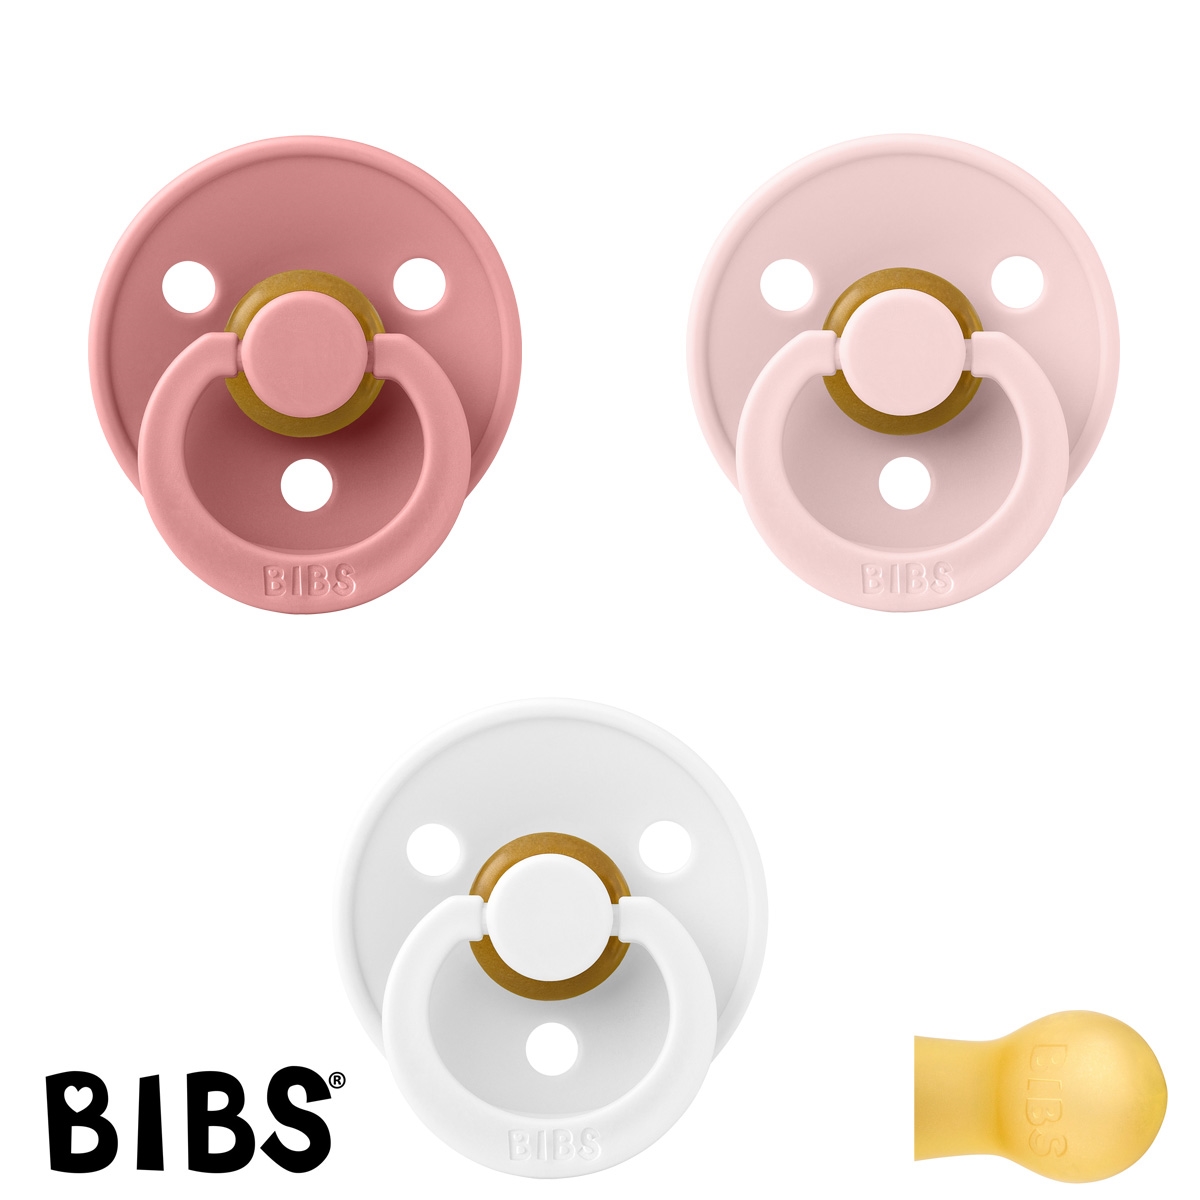 BIBS Colour Sutter med navn str1, 1 White, 1 Dusty Pink, 1 Blossom, Runde latex, Pakke med 3 sutter